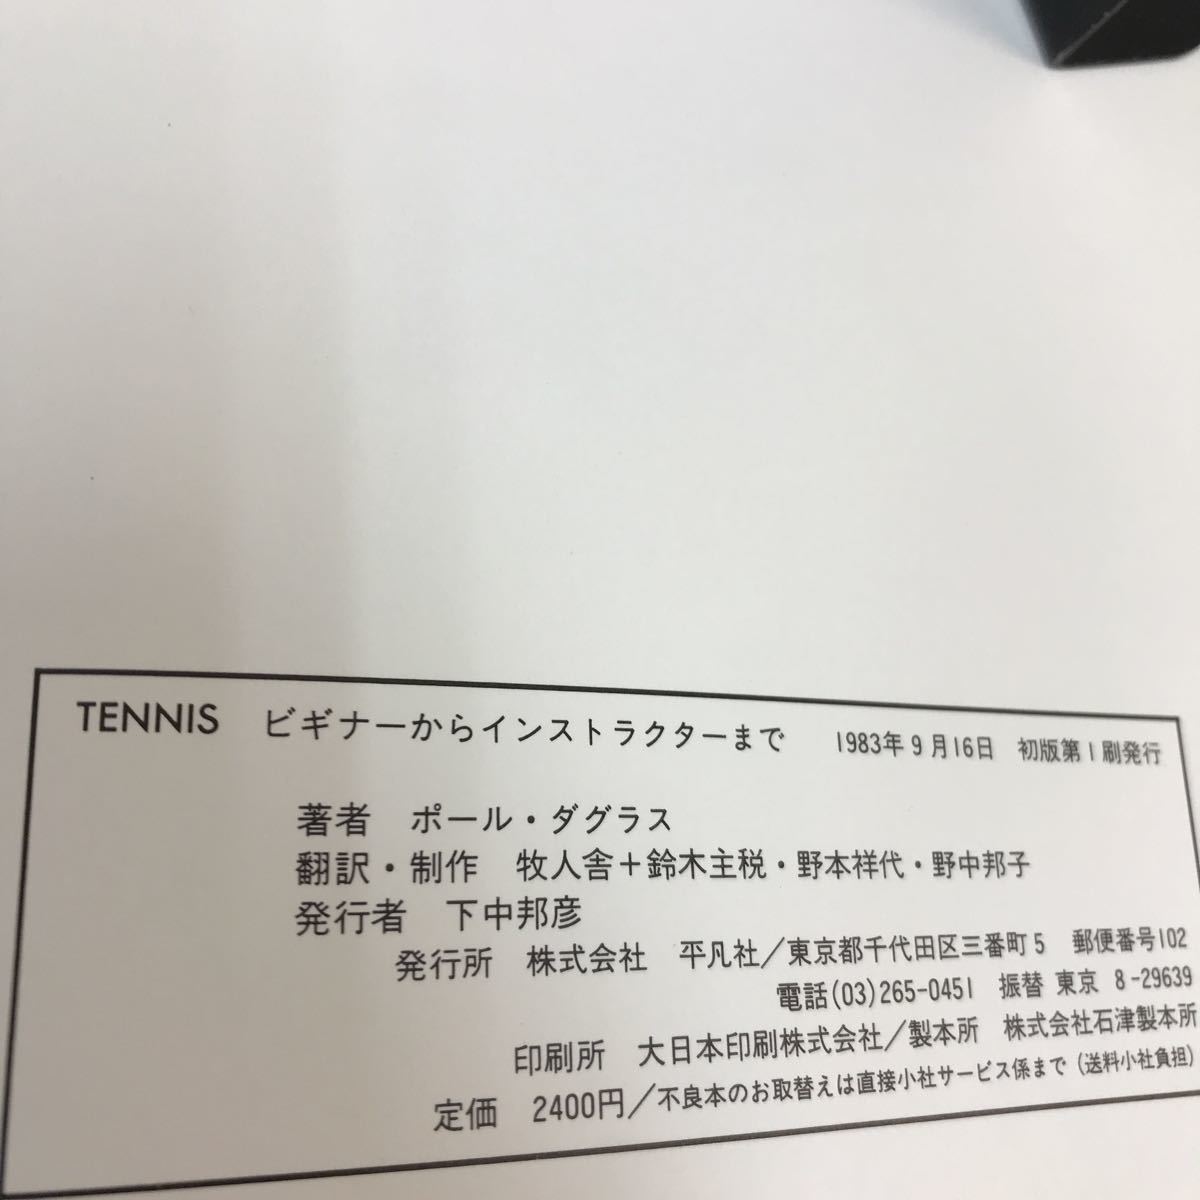 A06-134 теннис TENNIS начинающий из in s трактор до paul (pole) *da стакан Heibonsha вписывание есть 